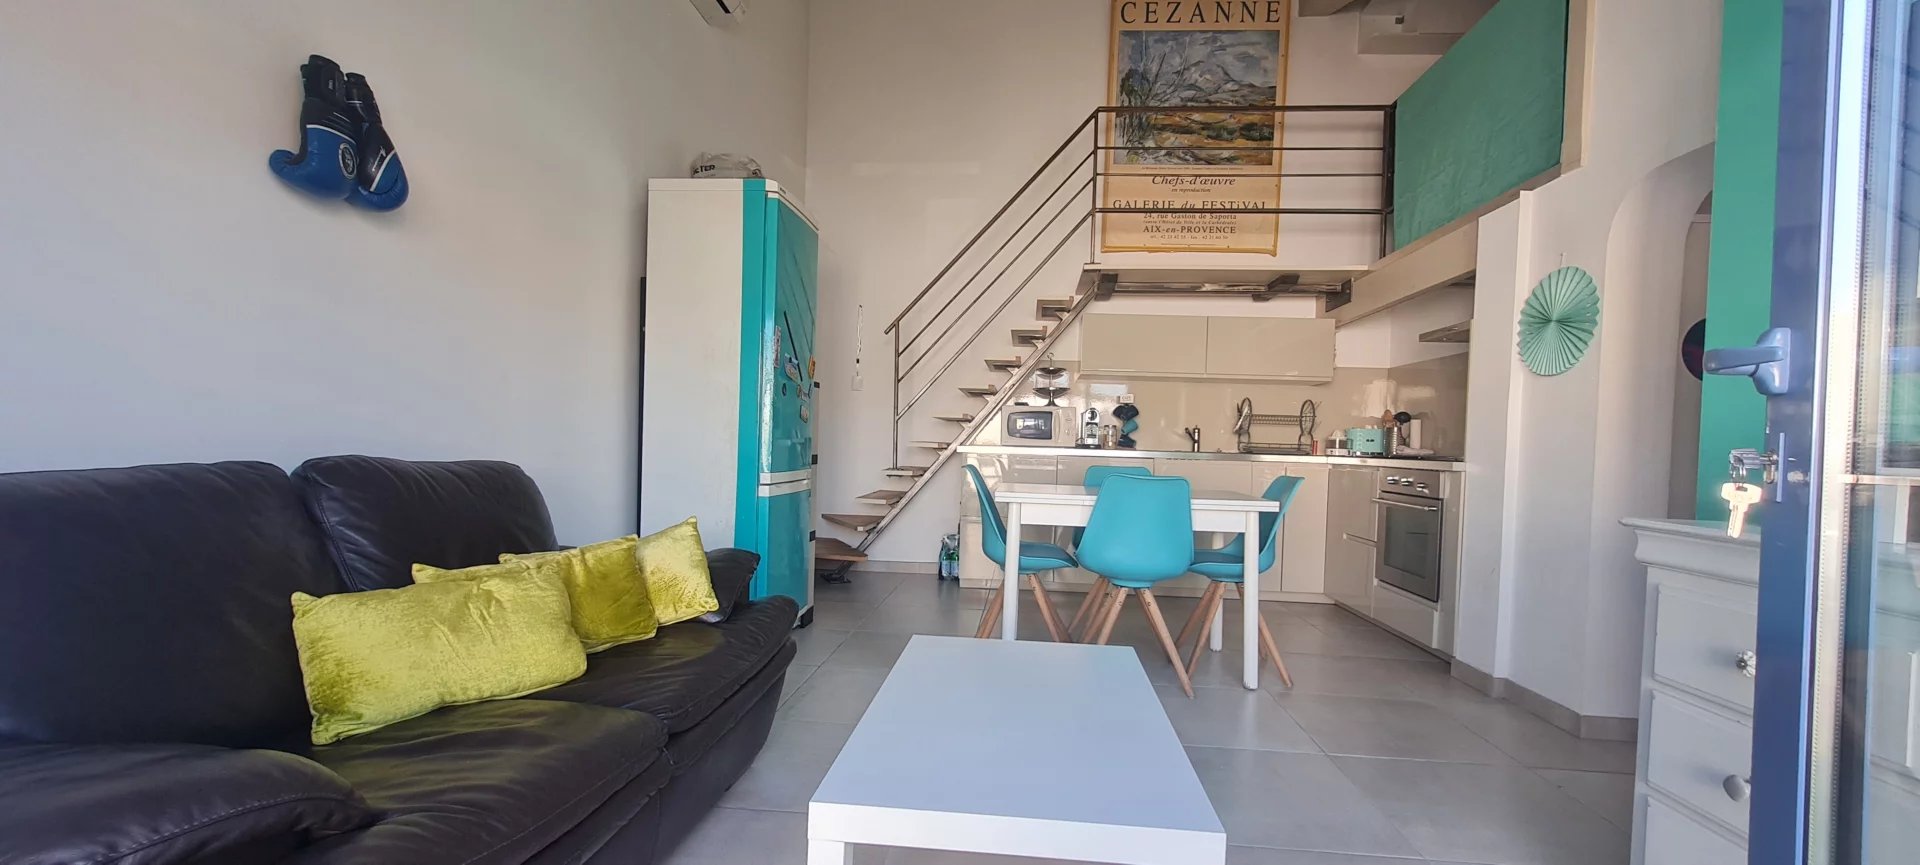 MAISON pour INVESTISSEUR ou REGROUPEMENT FAMILIAL MAISON 250 m² divisée en 4 appartements  entre Marseille et Aix-en-Provence